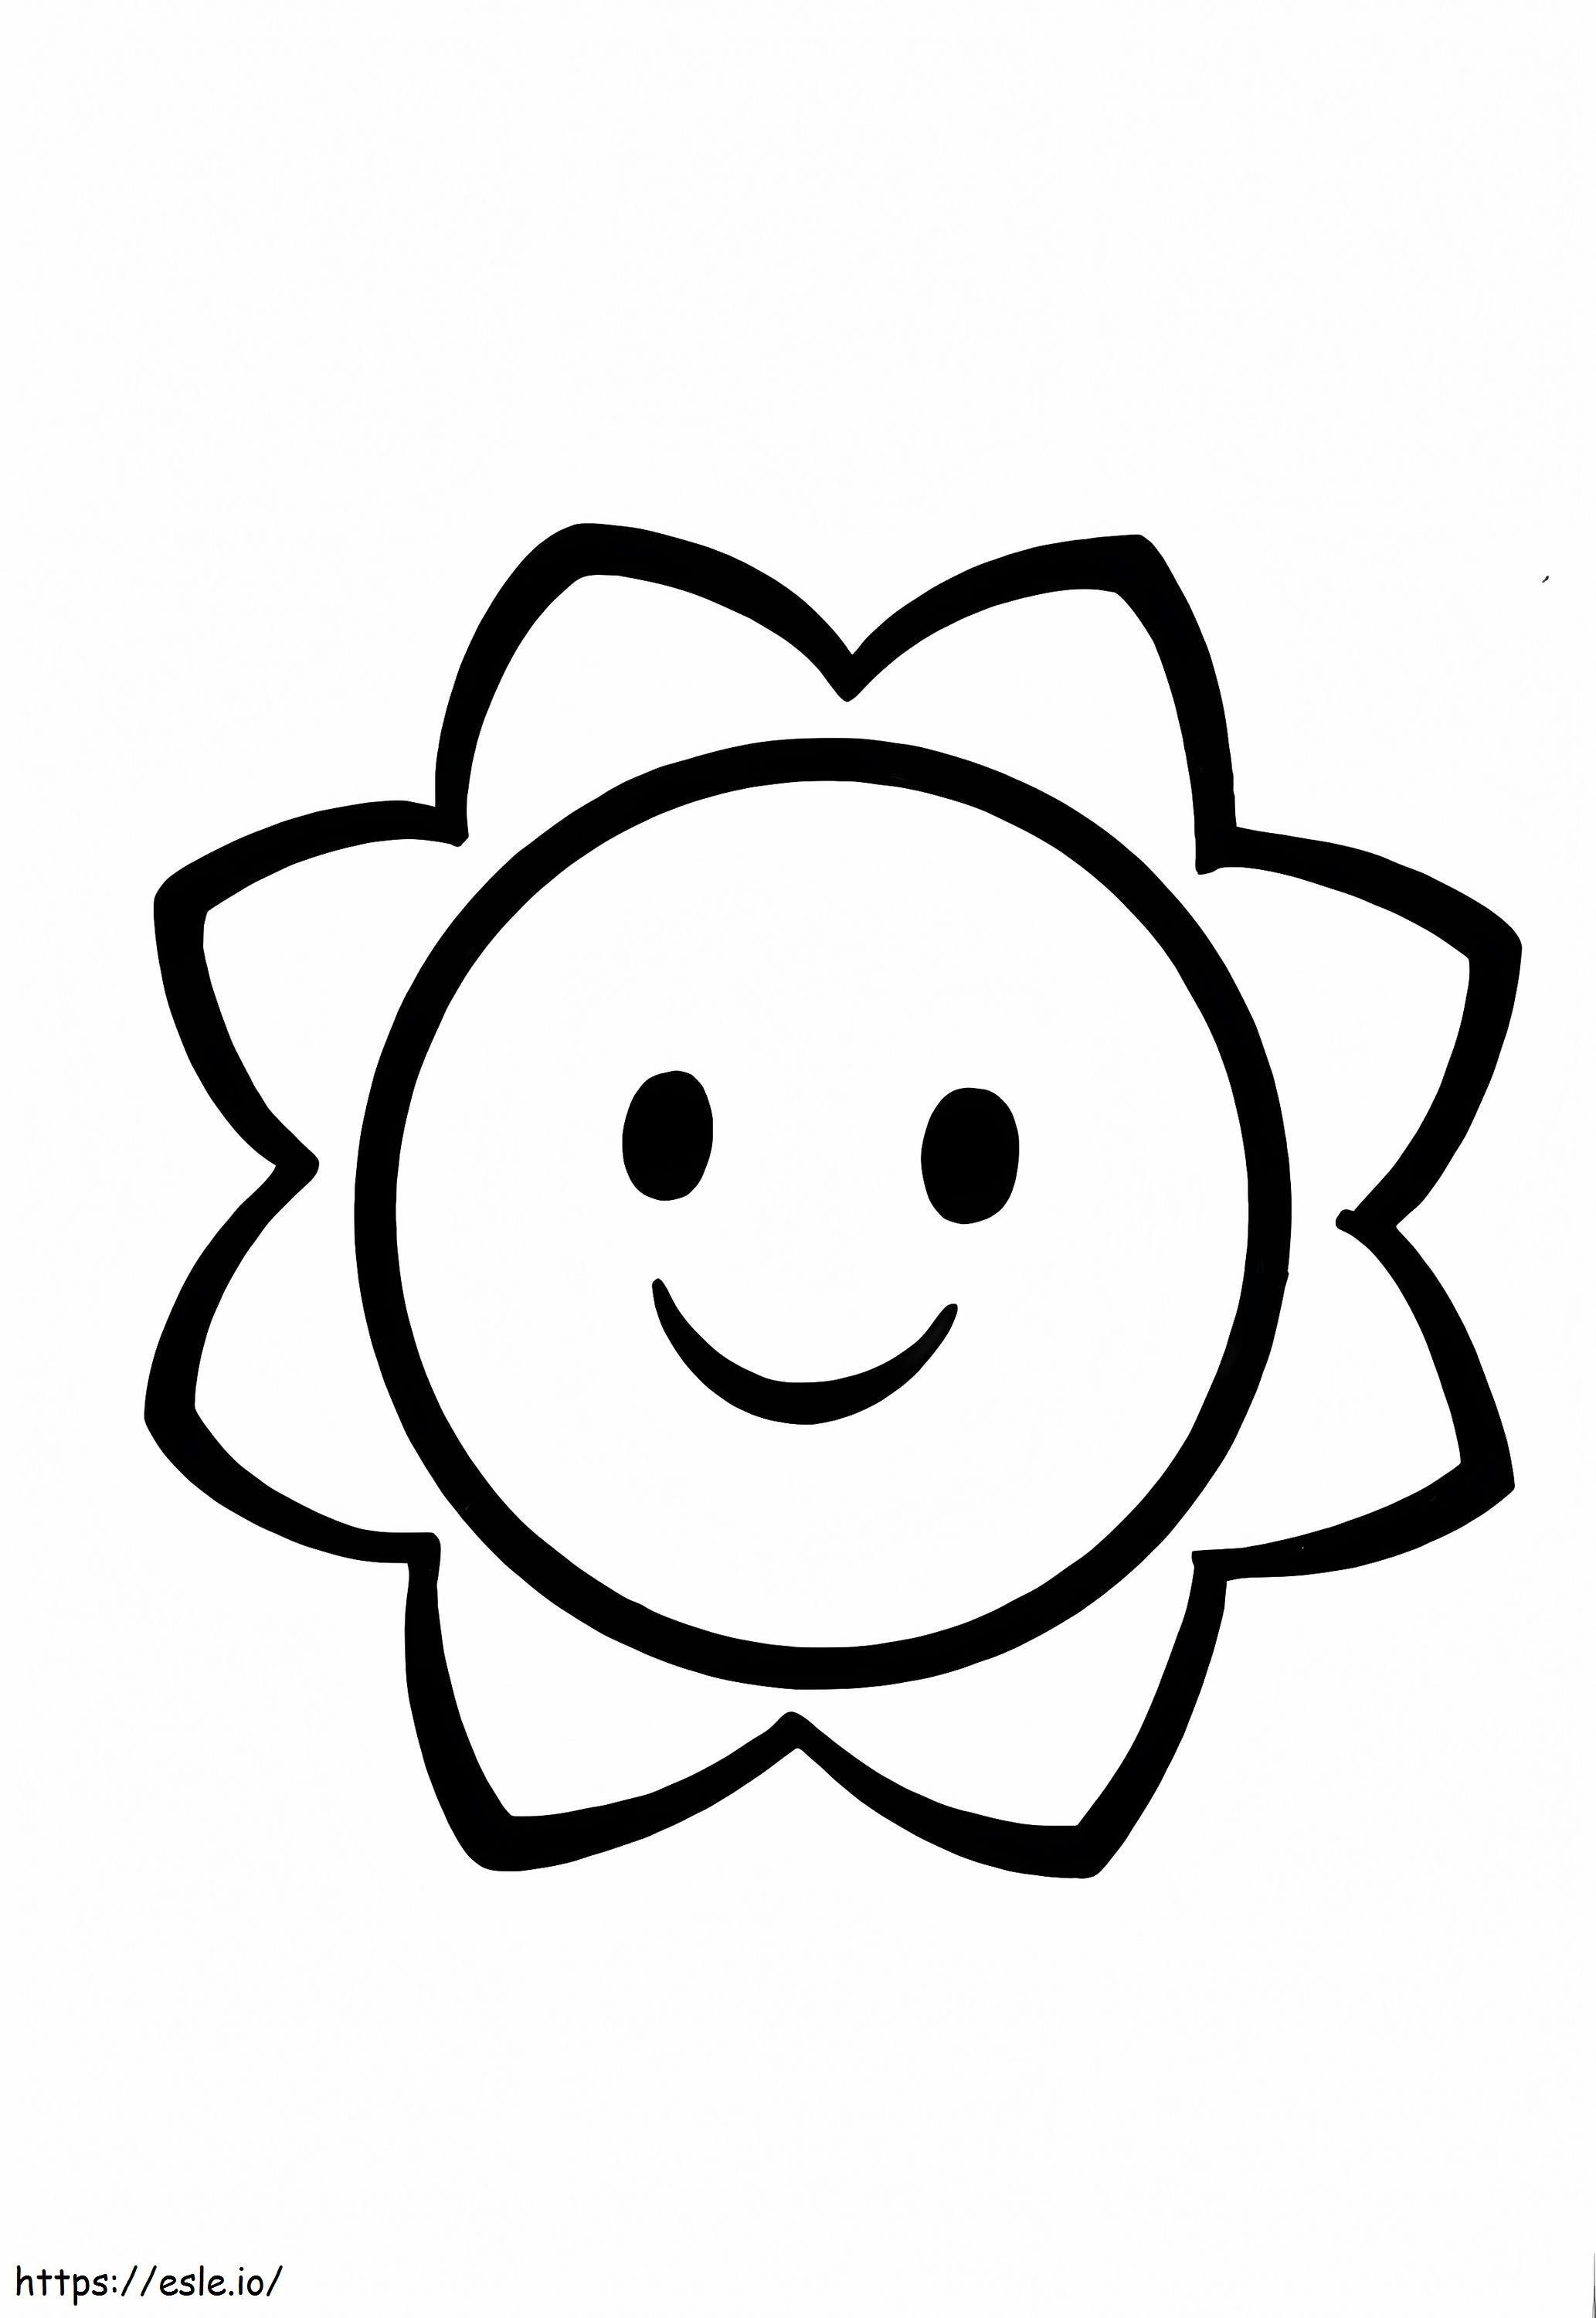 Mooie bloem voor kinderen van 1 jaar oud kleurplaat kleurplaat